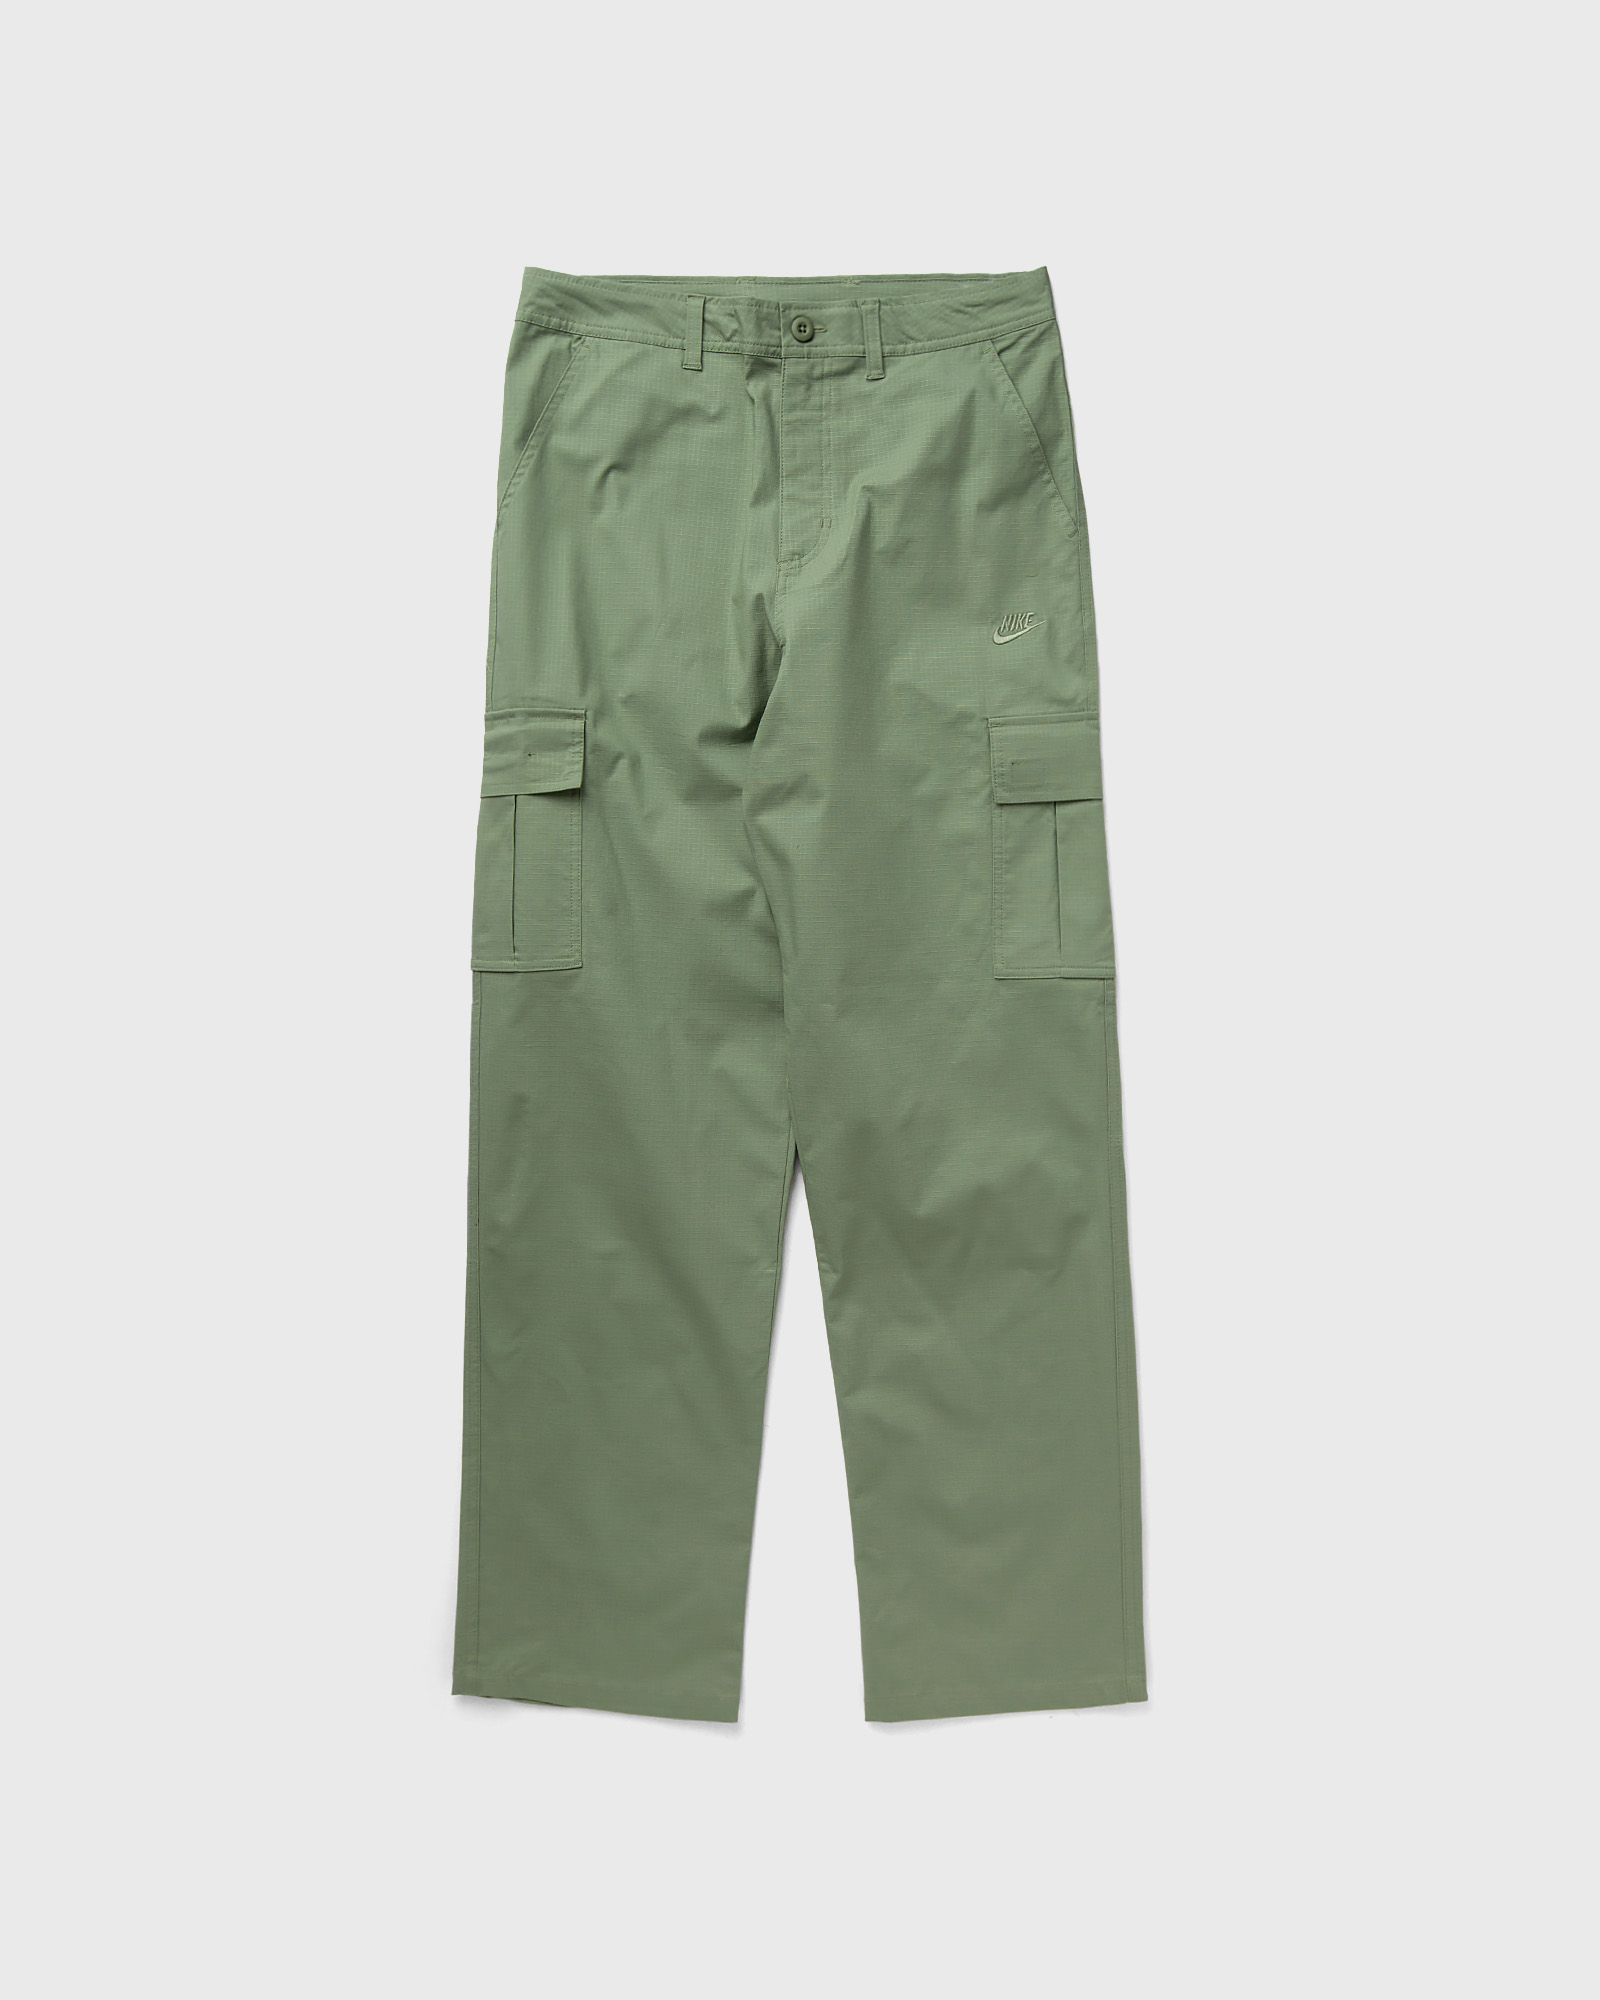 Nike - club cargo pants men cargo pants green in größe:3xl